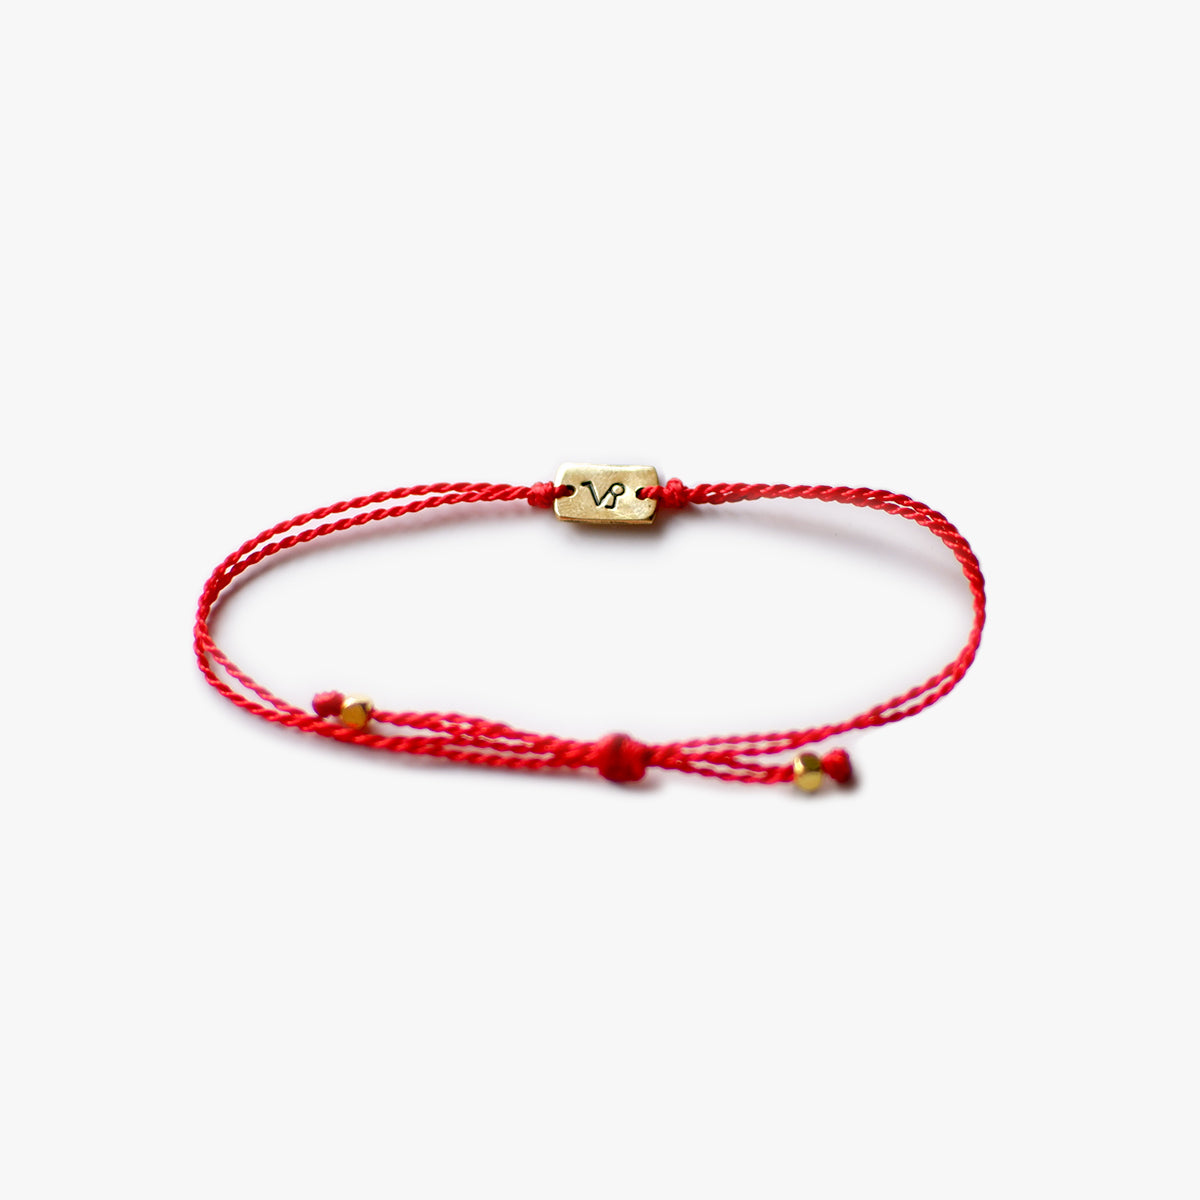 The Red Line Zodiac Sign Easy-Wear Bracelet